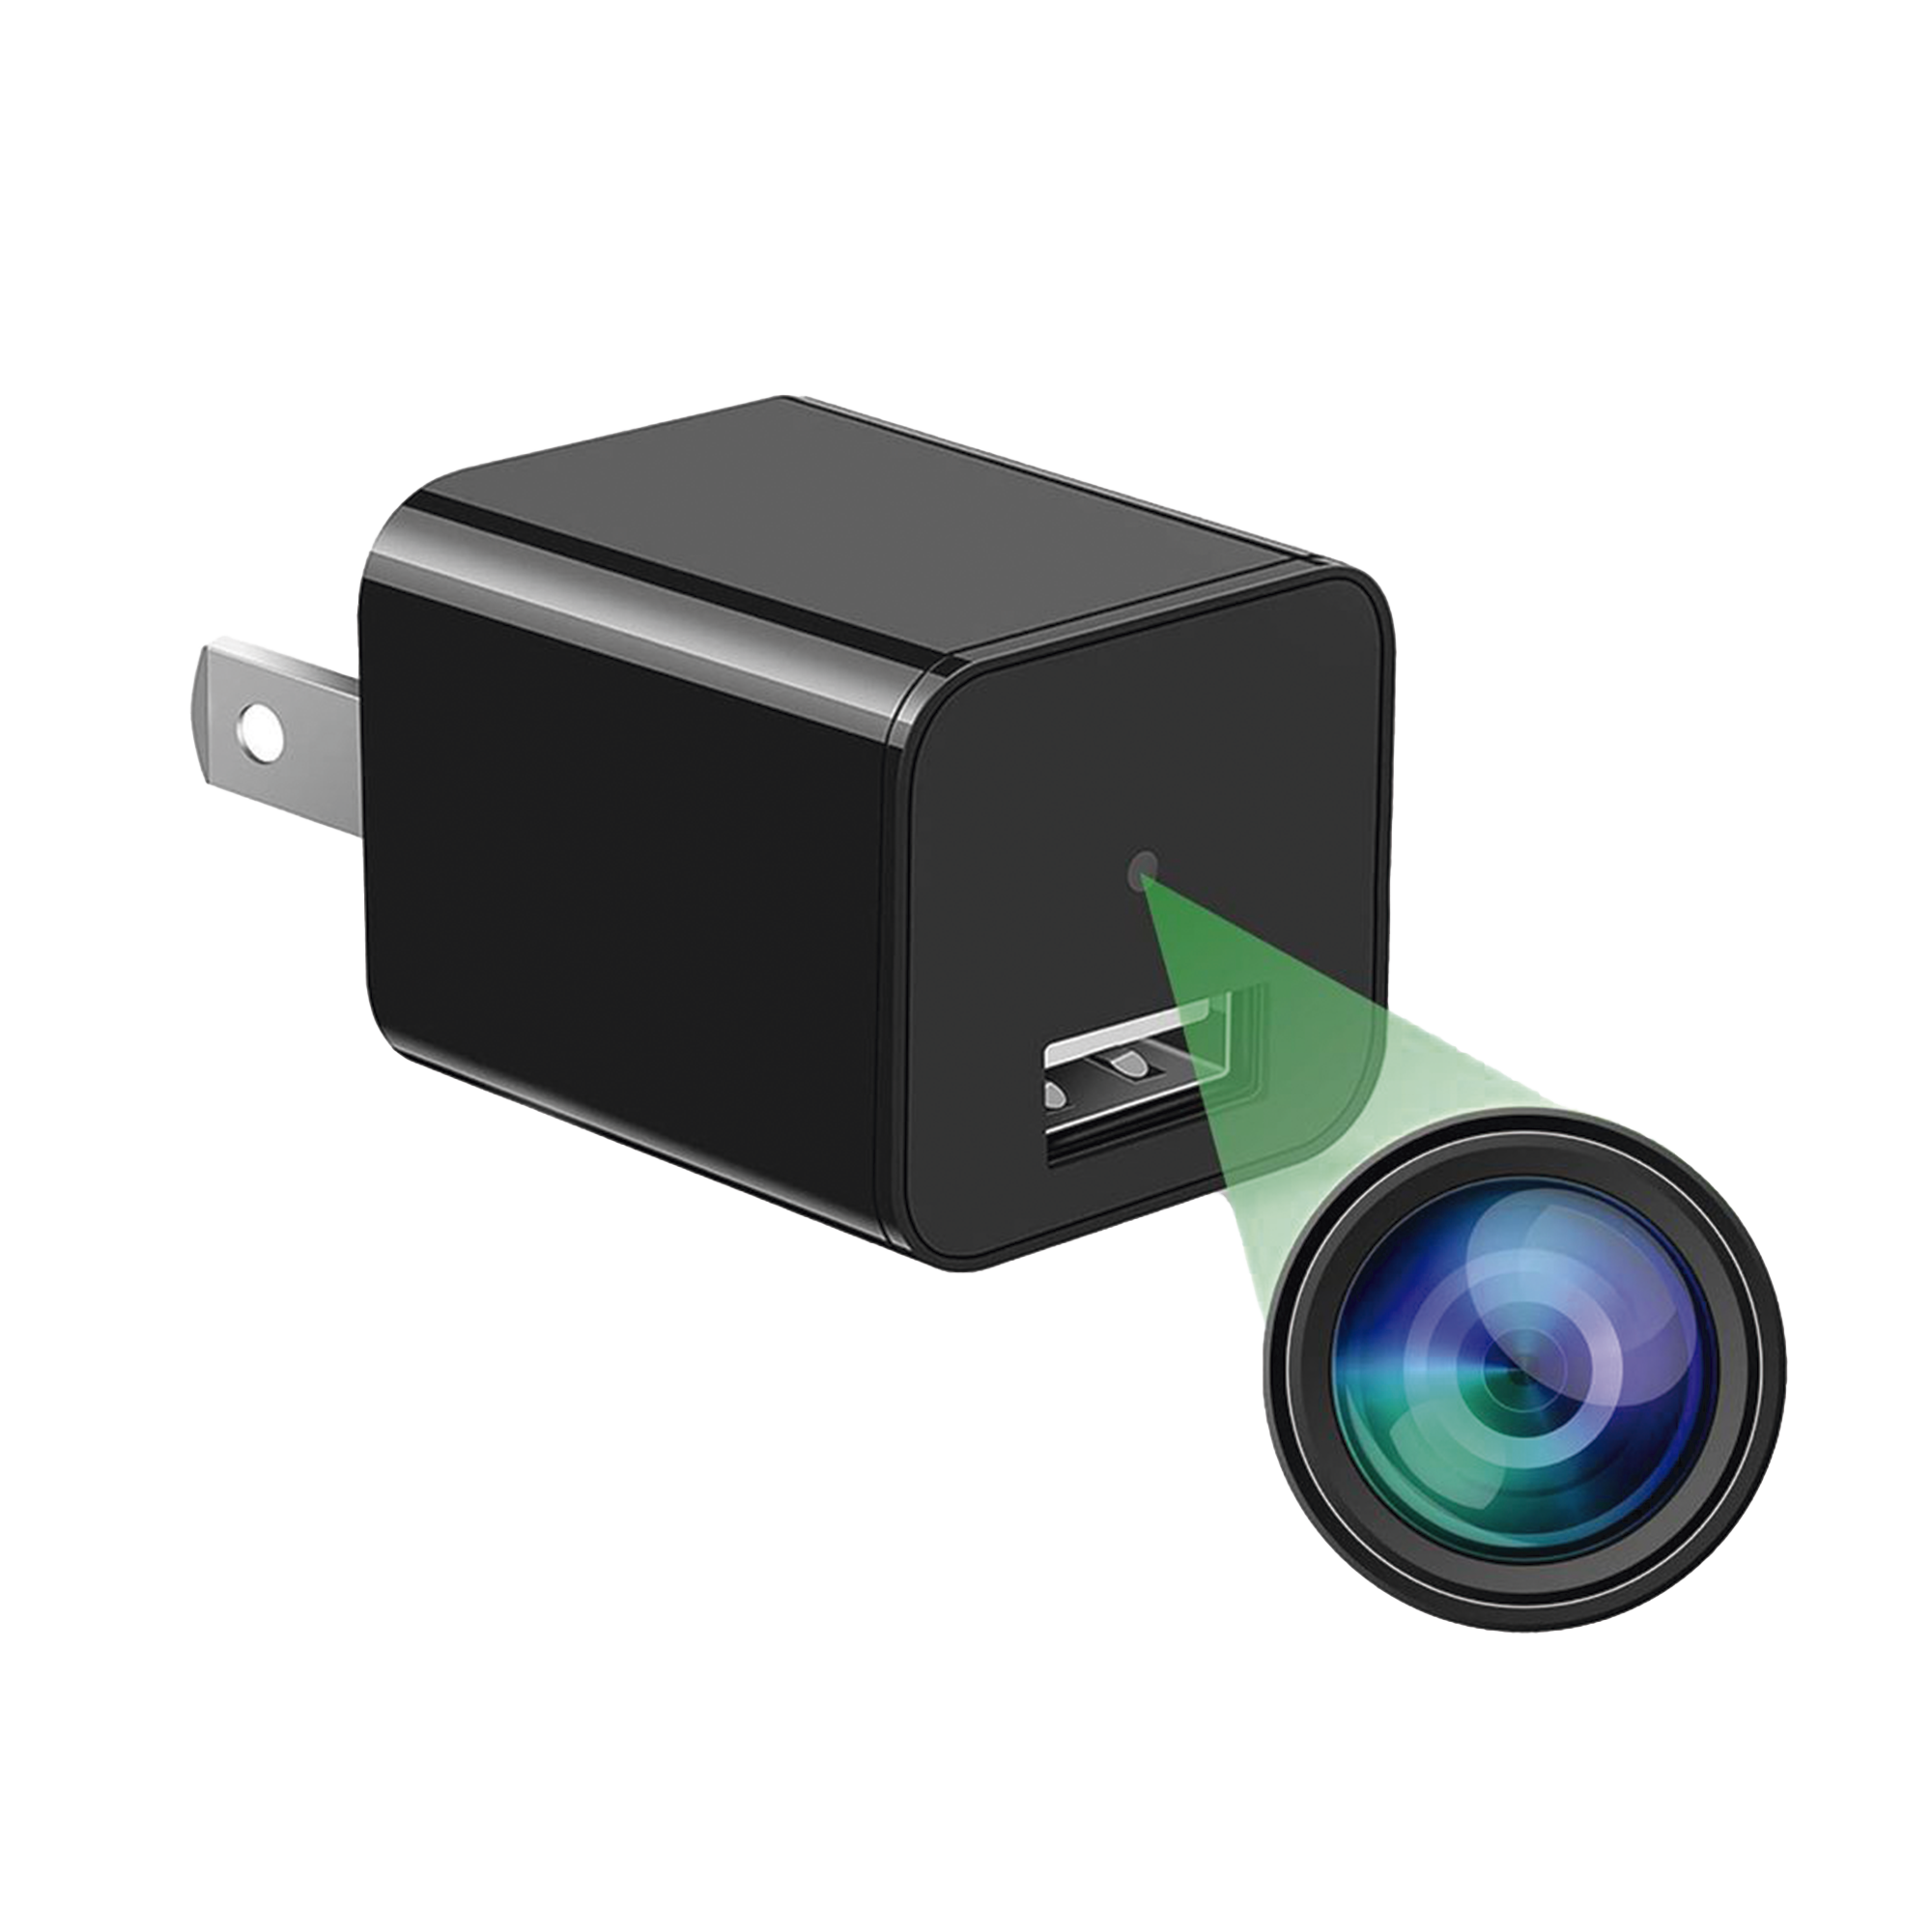 Cámara Oculta en Cargador de Pared (Spyce Camera) / Memoria de 8GB / Resolución 2 Megapixel (1080P) / Grabación Continua o por Movimiento